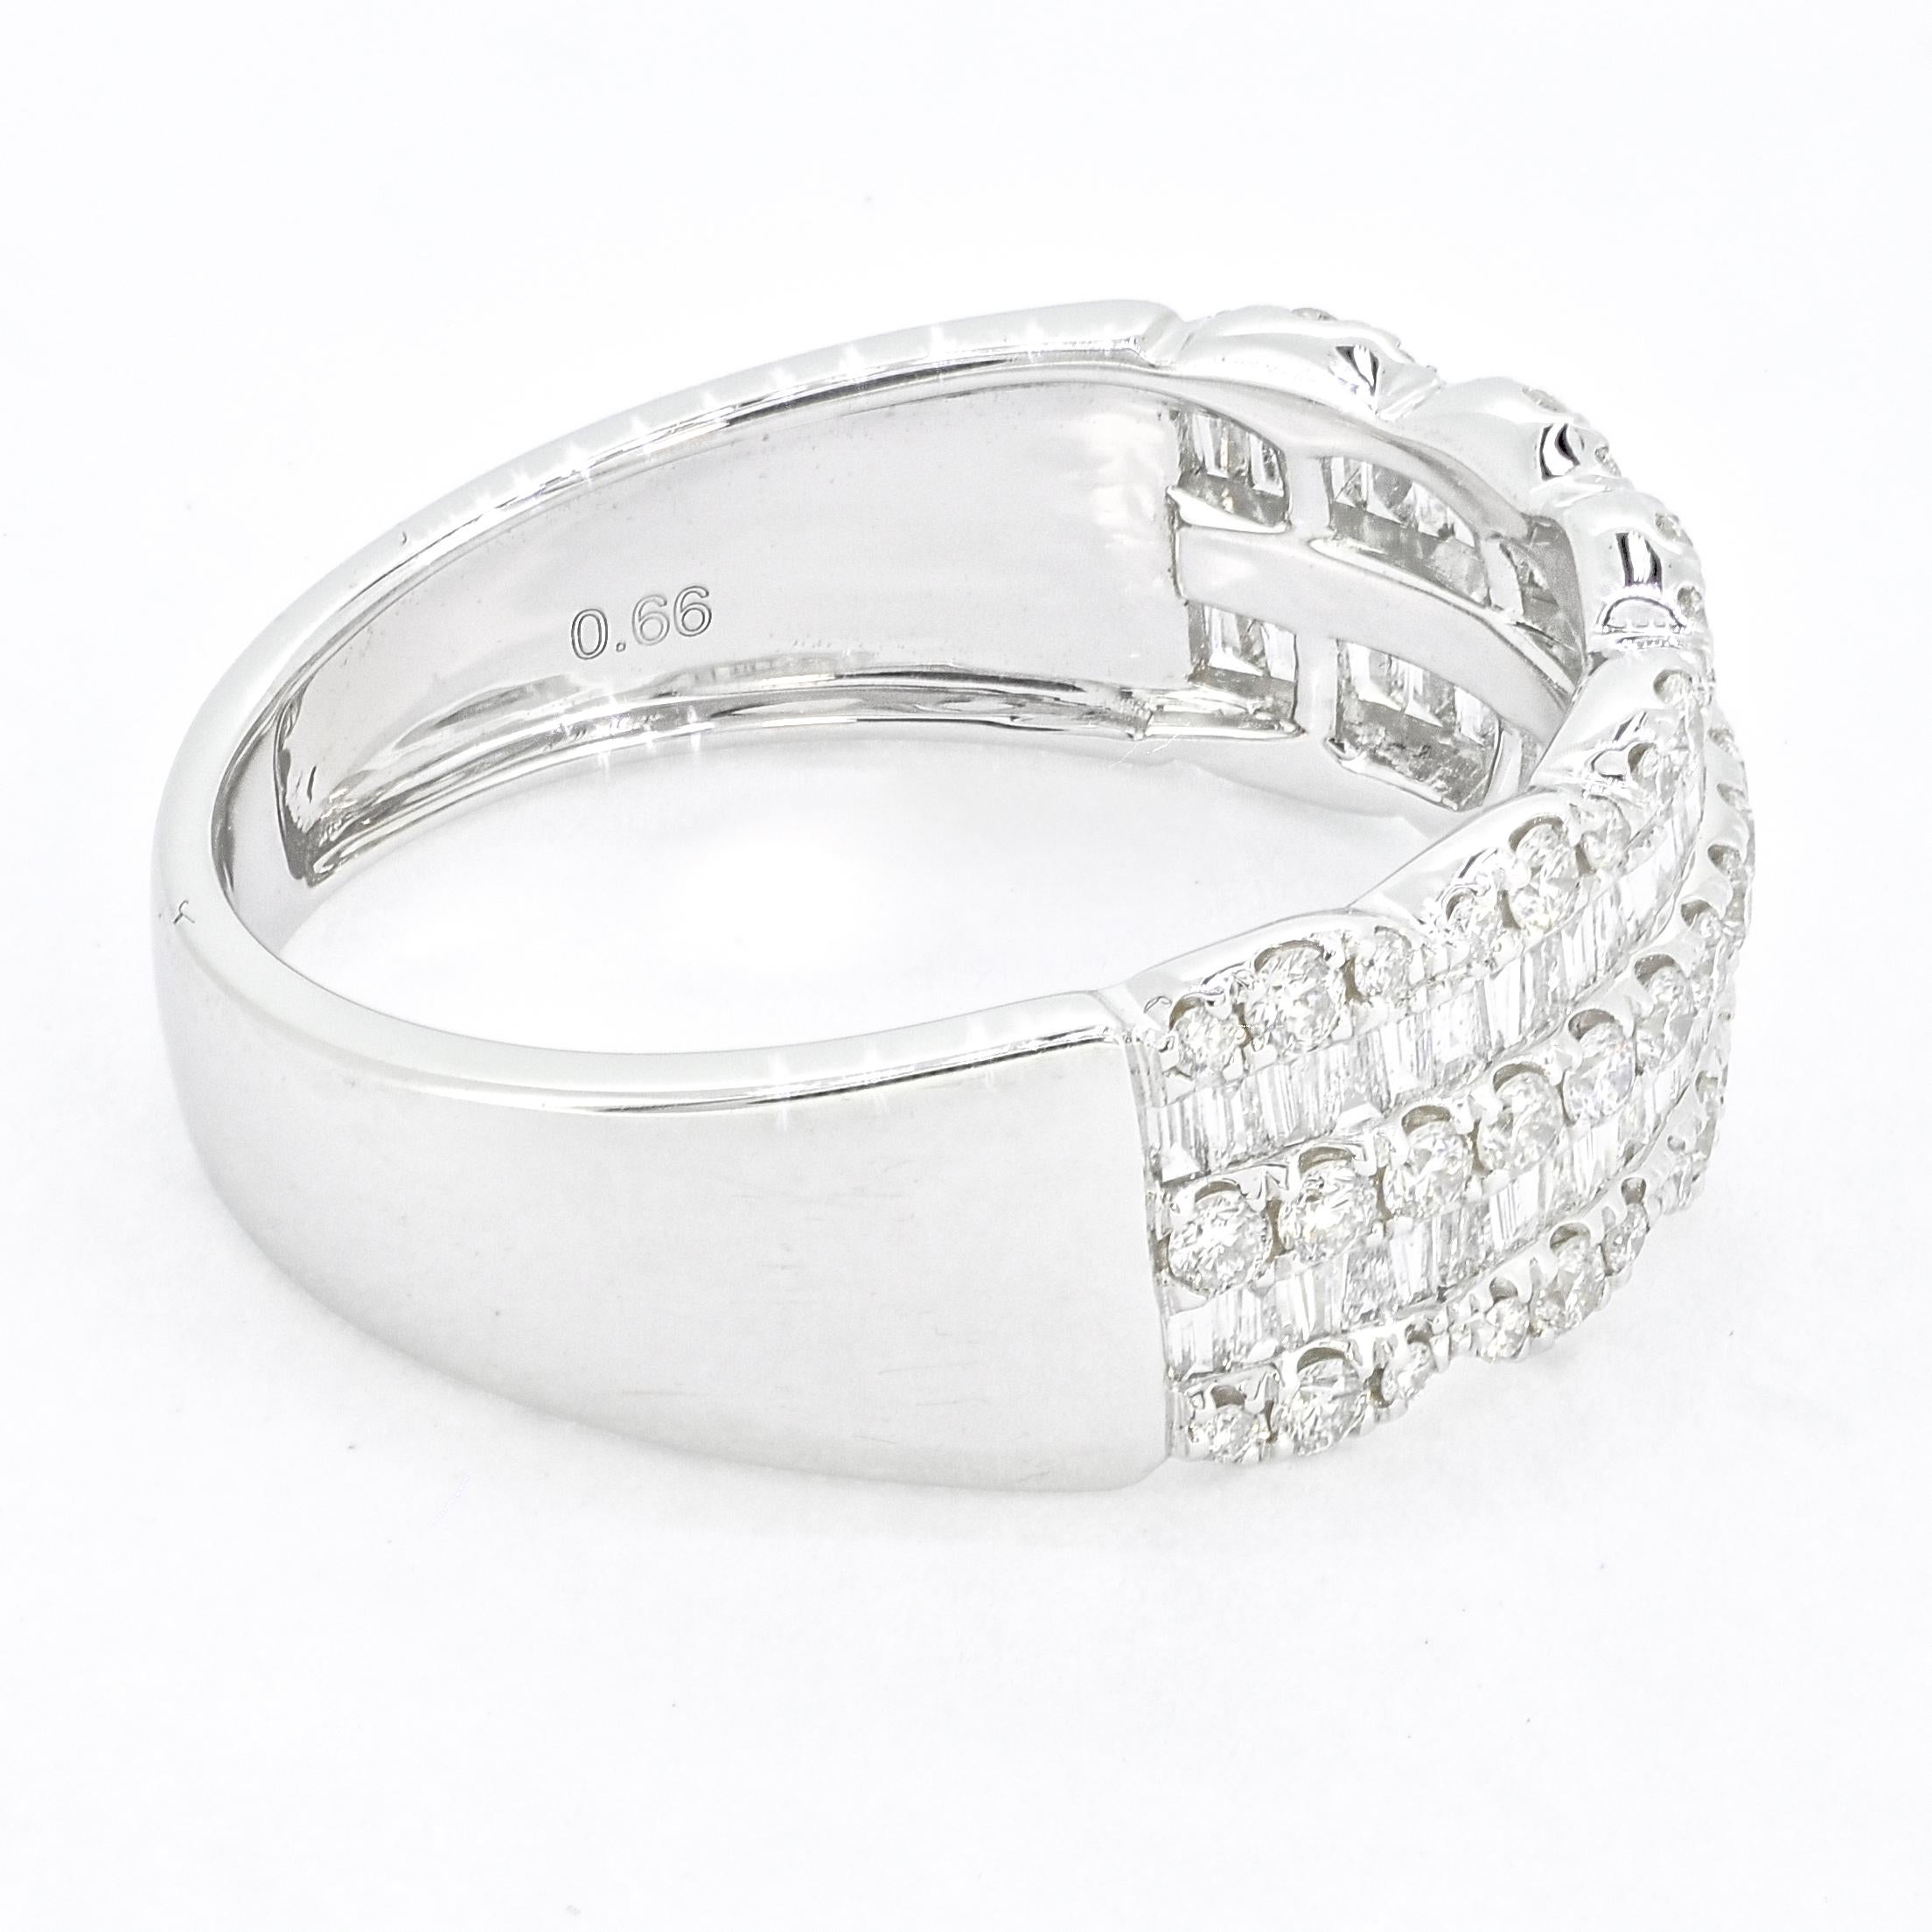 Wenn Sie auf der Suche nach einem schönen und vielseitigen Diamantring sind, der allein oder mit anderen Ringen getragen werden kann, sollten Sie einen Baguette- und Runddiamantring in 18-karätigem Gold in Betracht ziehen. In diesem exquisiten